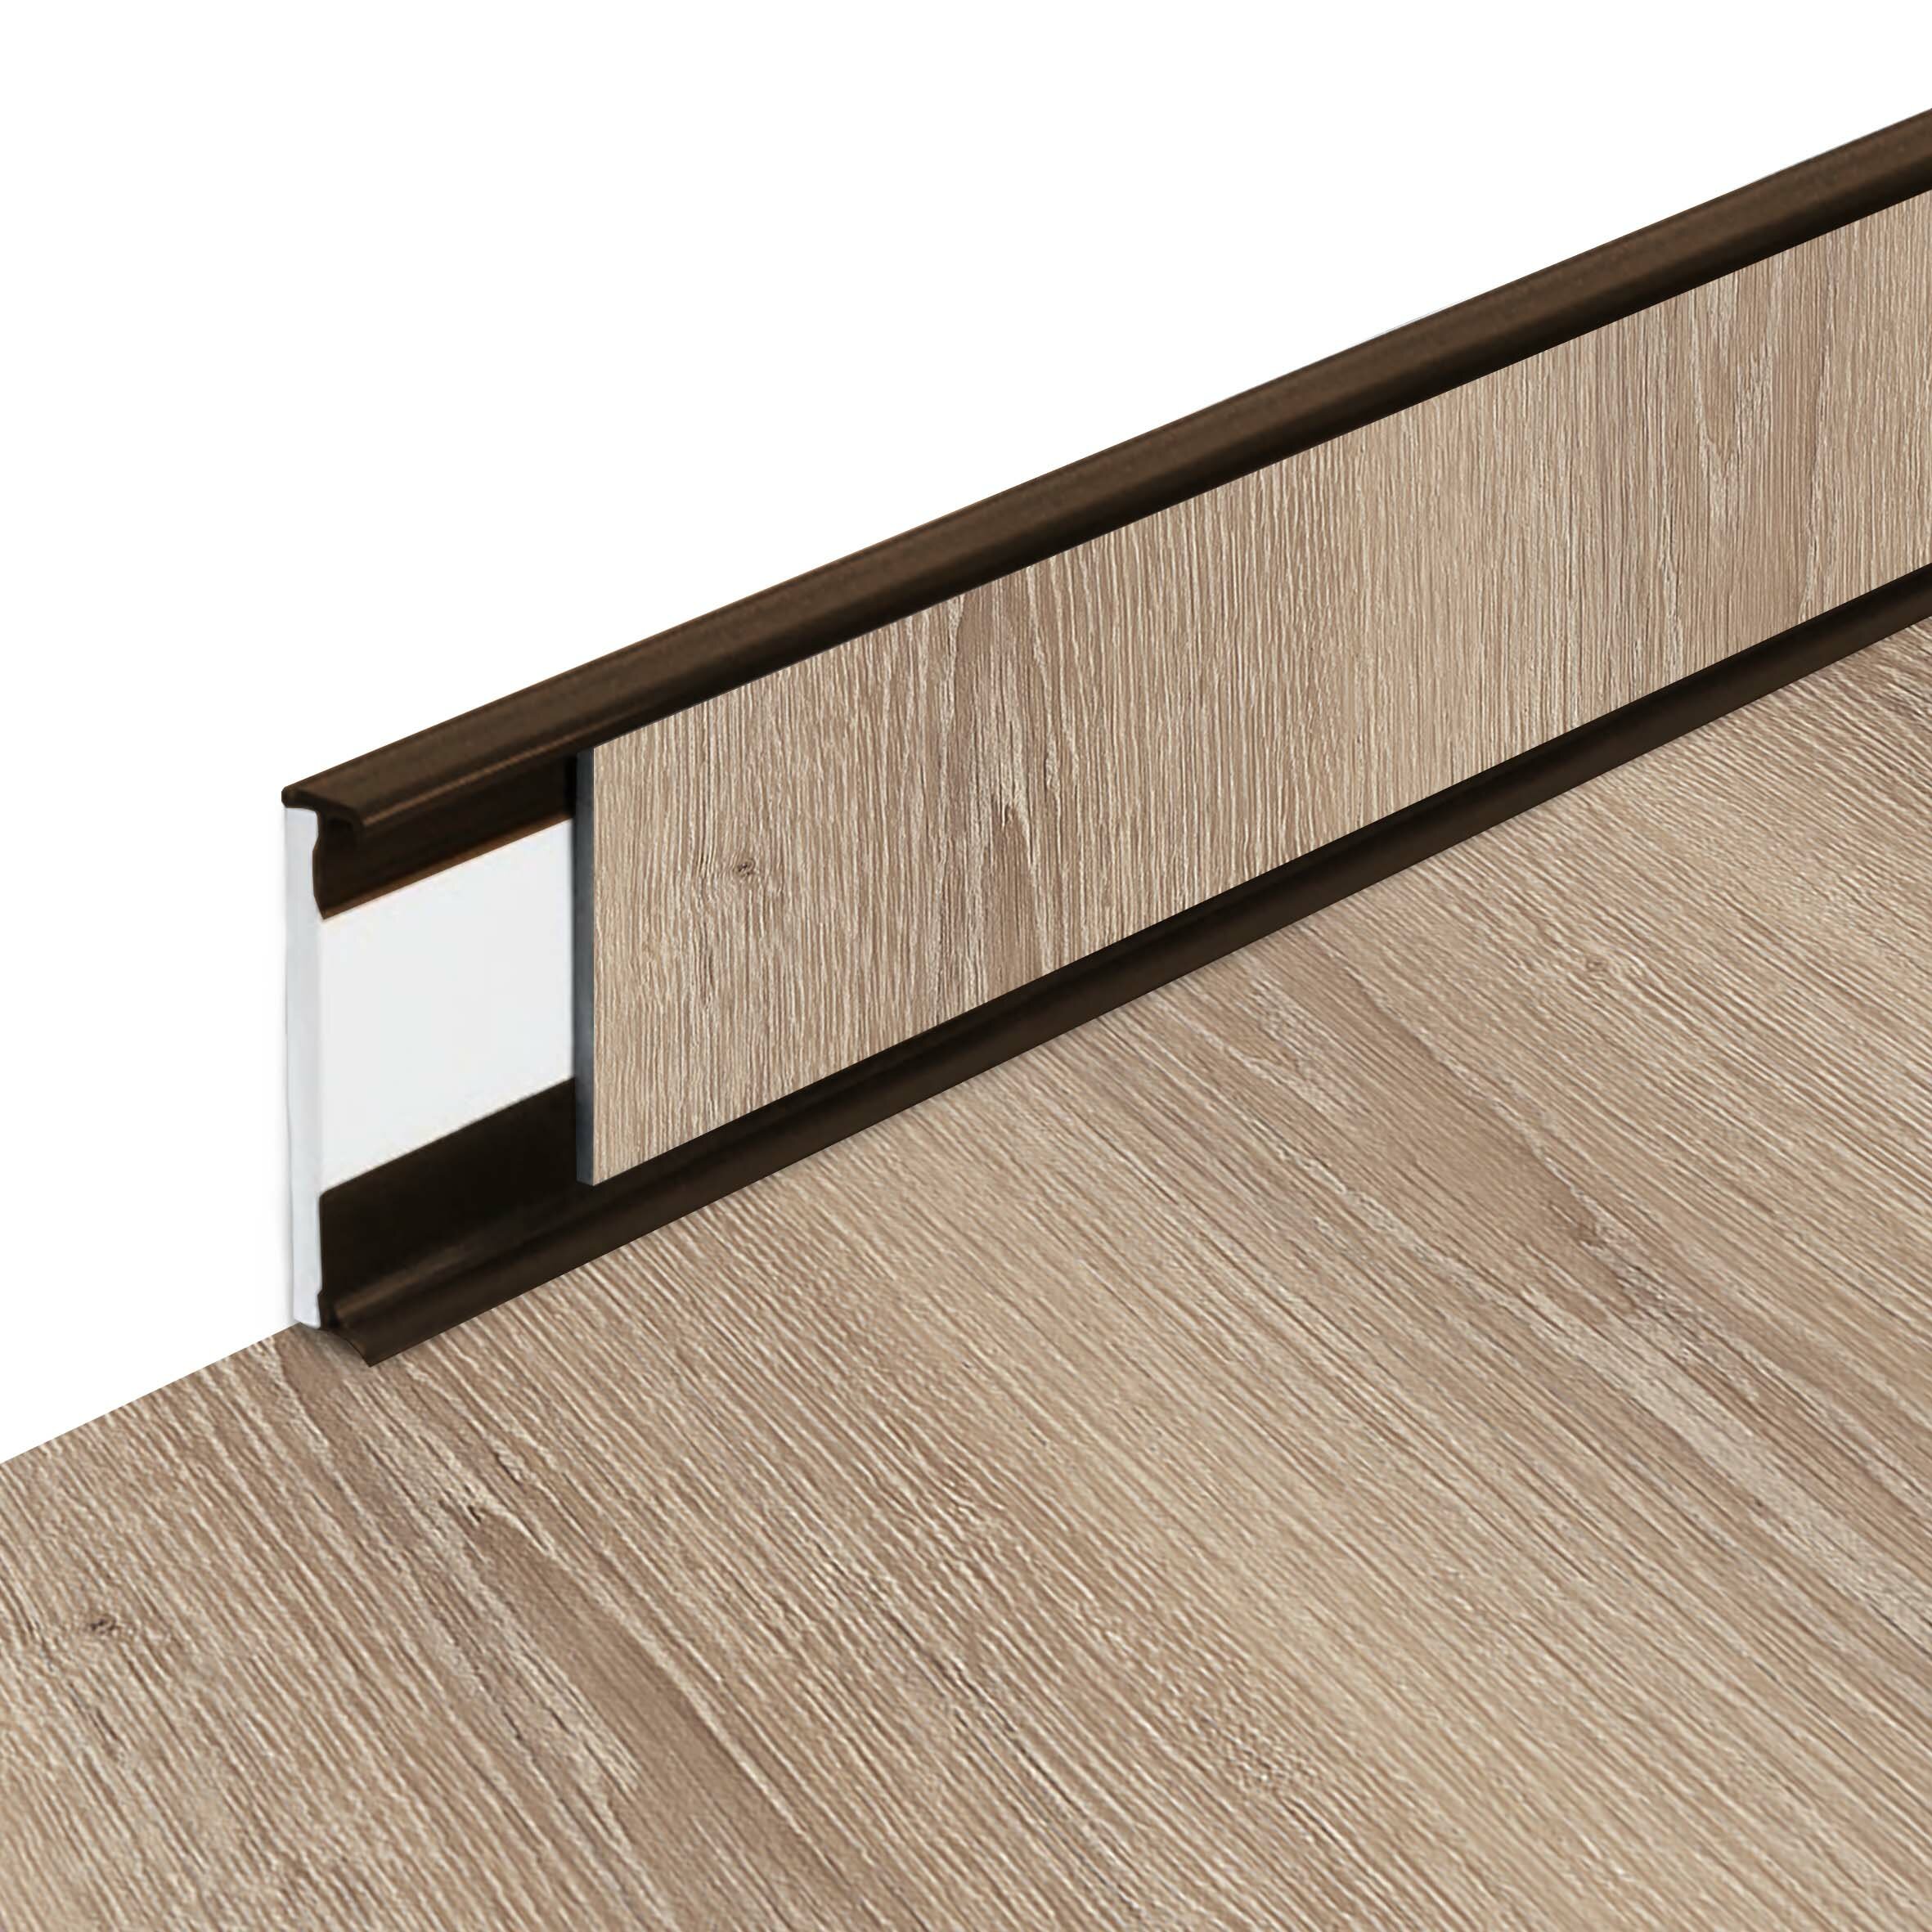 PVC vinylová soklová podlahová lišta Fortelock Business Tyrolean oak W001 Brown - délka 200 cm, výška 5,8 cm, tloušťka 1,2 cm